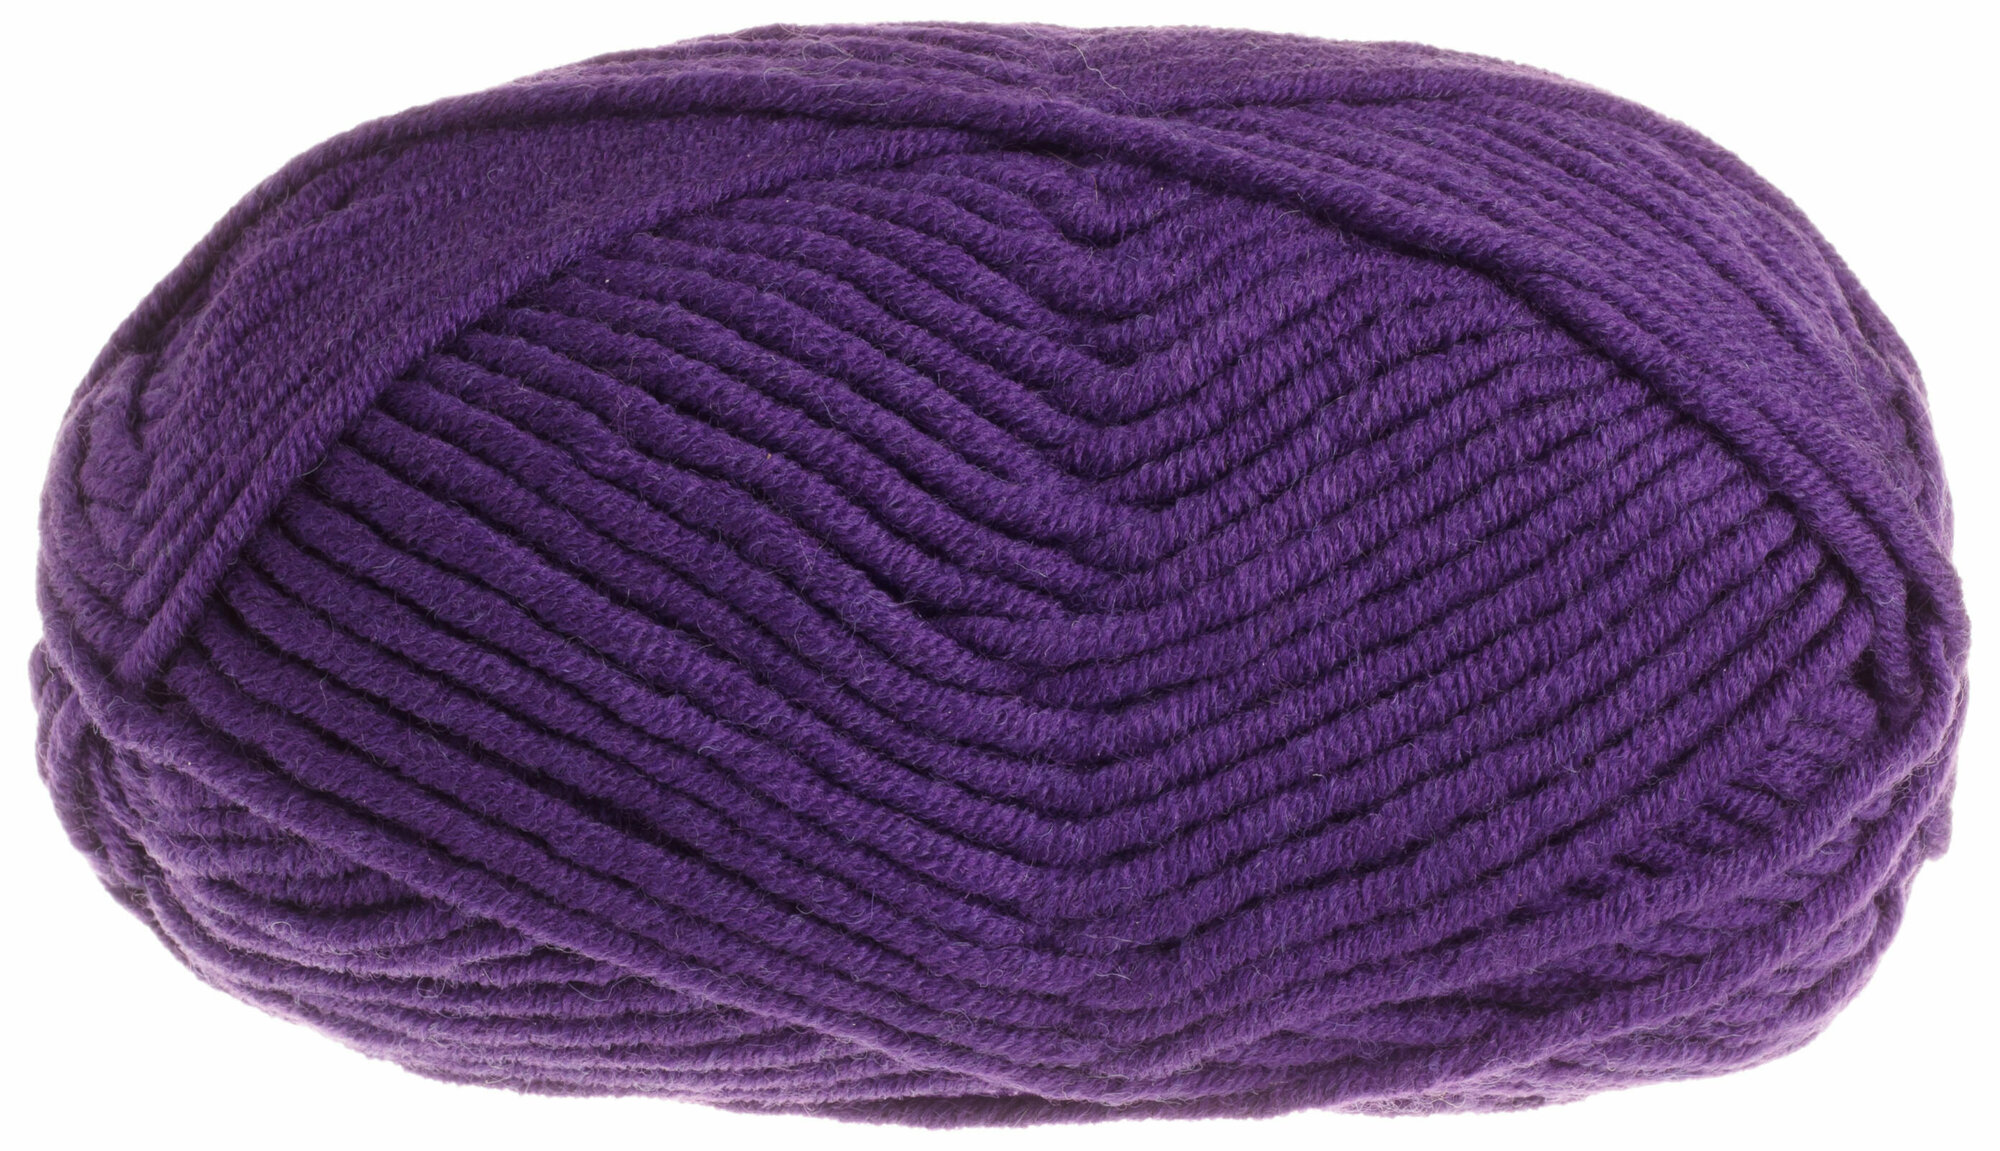 Пряжа Yarnart Merino Bulky фиолетовый (556), 70%акрил/30%шерсть, 100м, 100г, 1шт